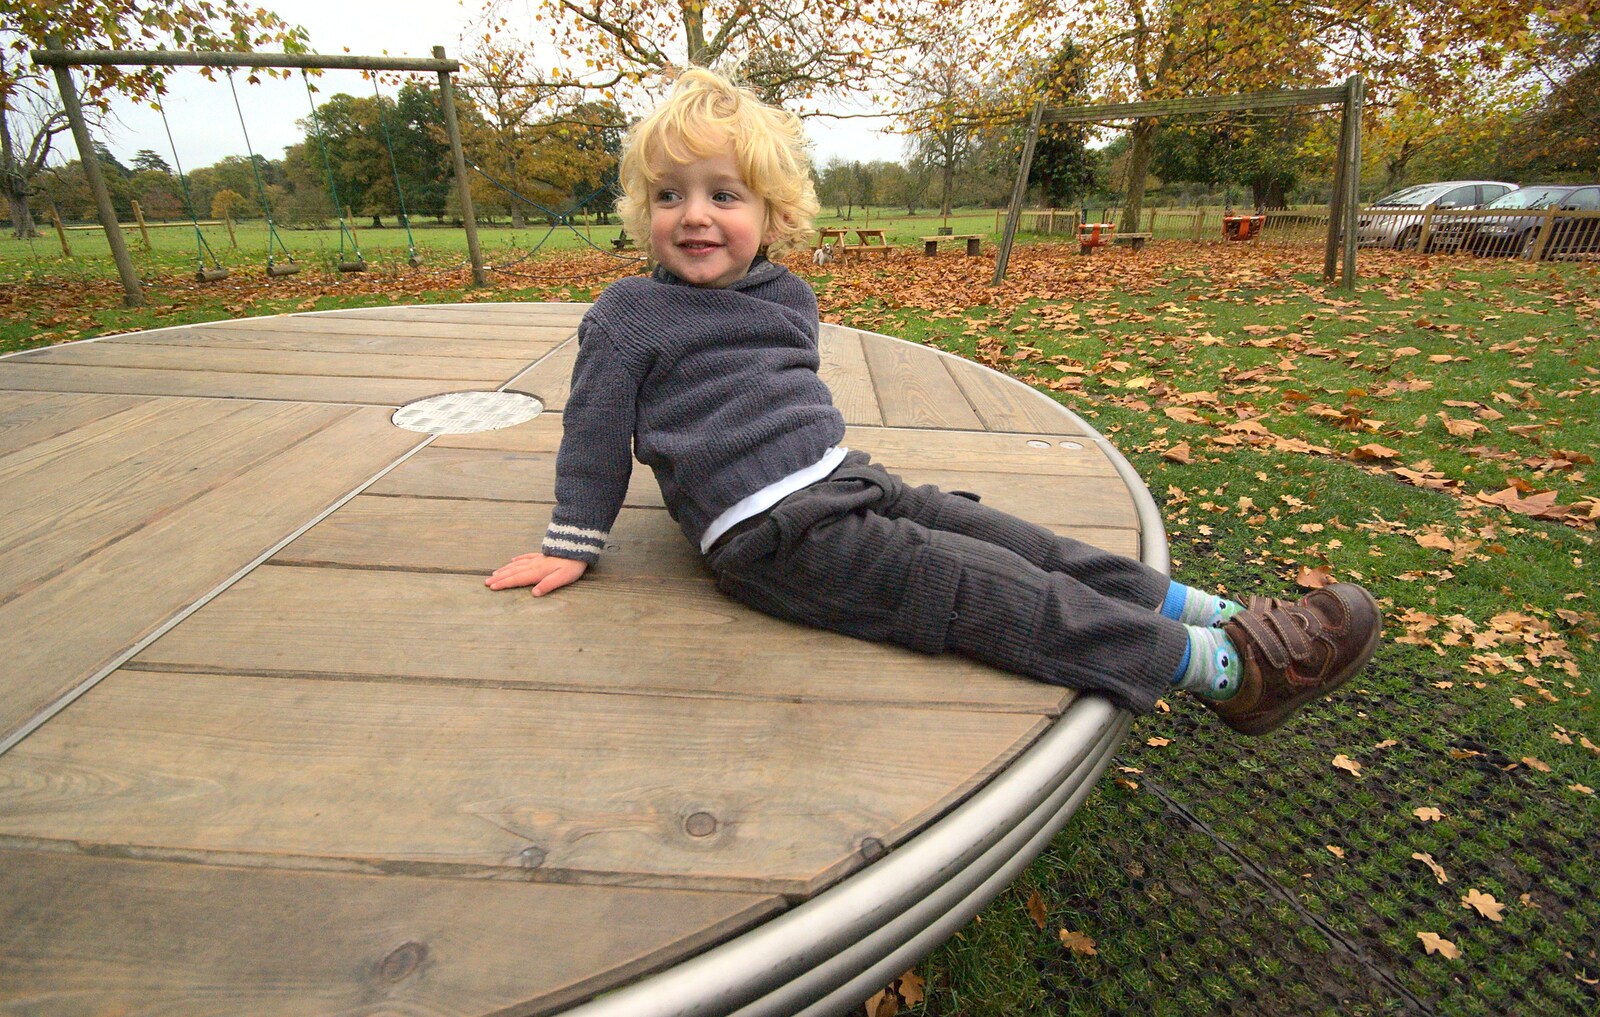 Fred spins around from Autumn in Thornham Estate, Thornham, Suffolk - 6th November 2011